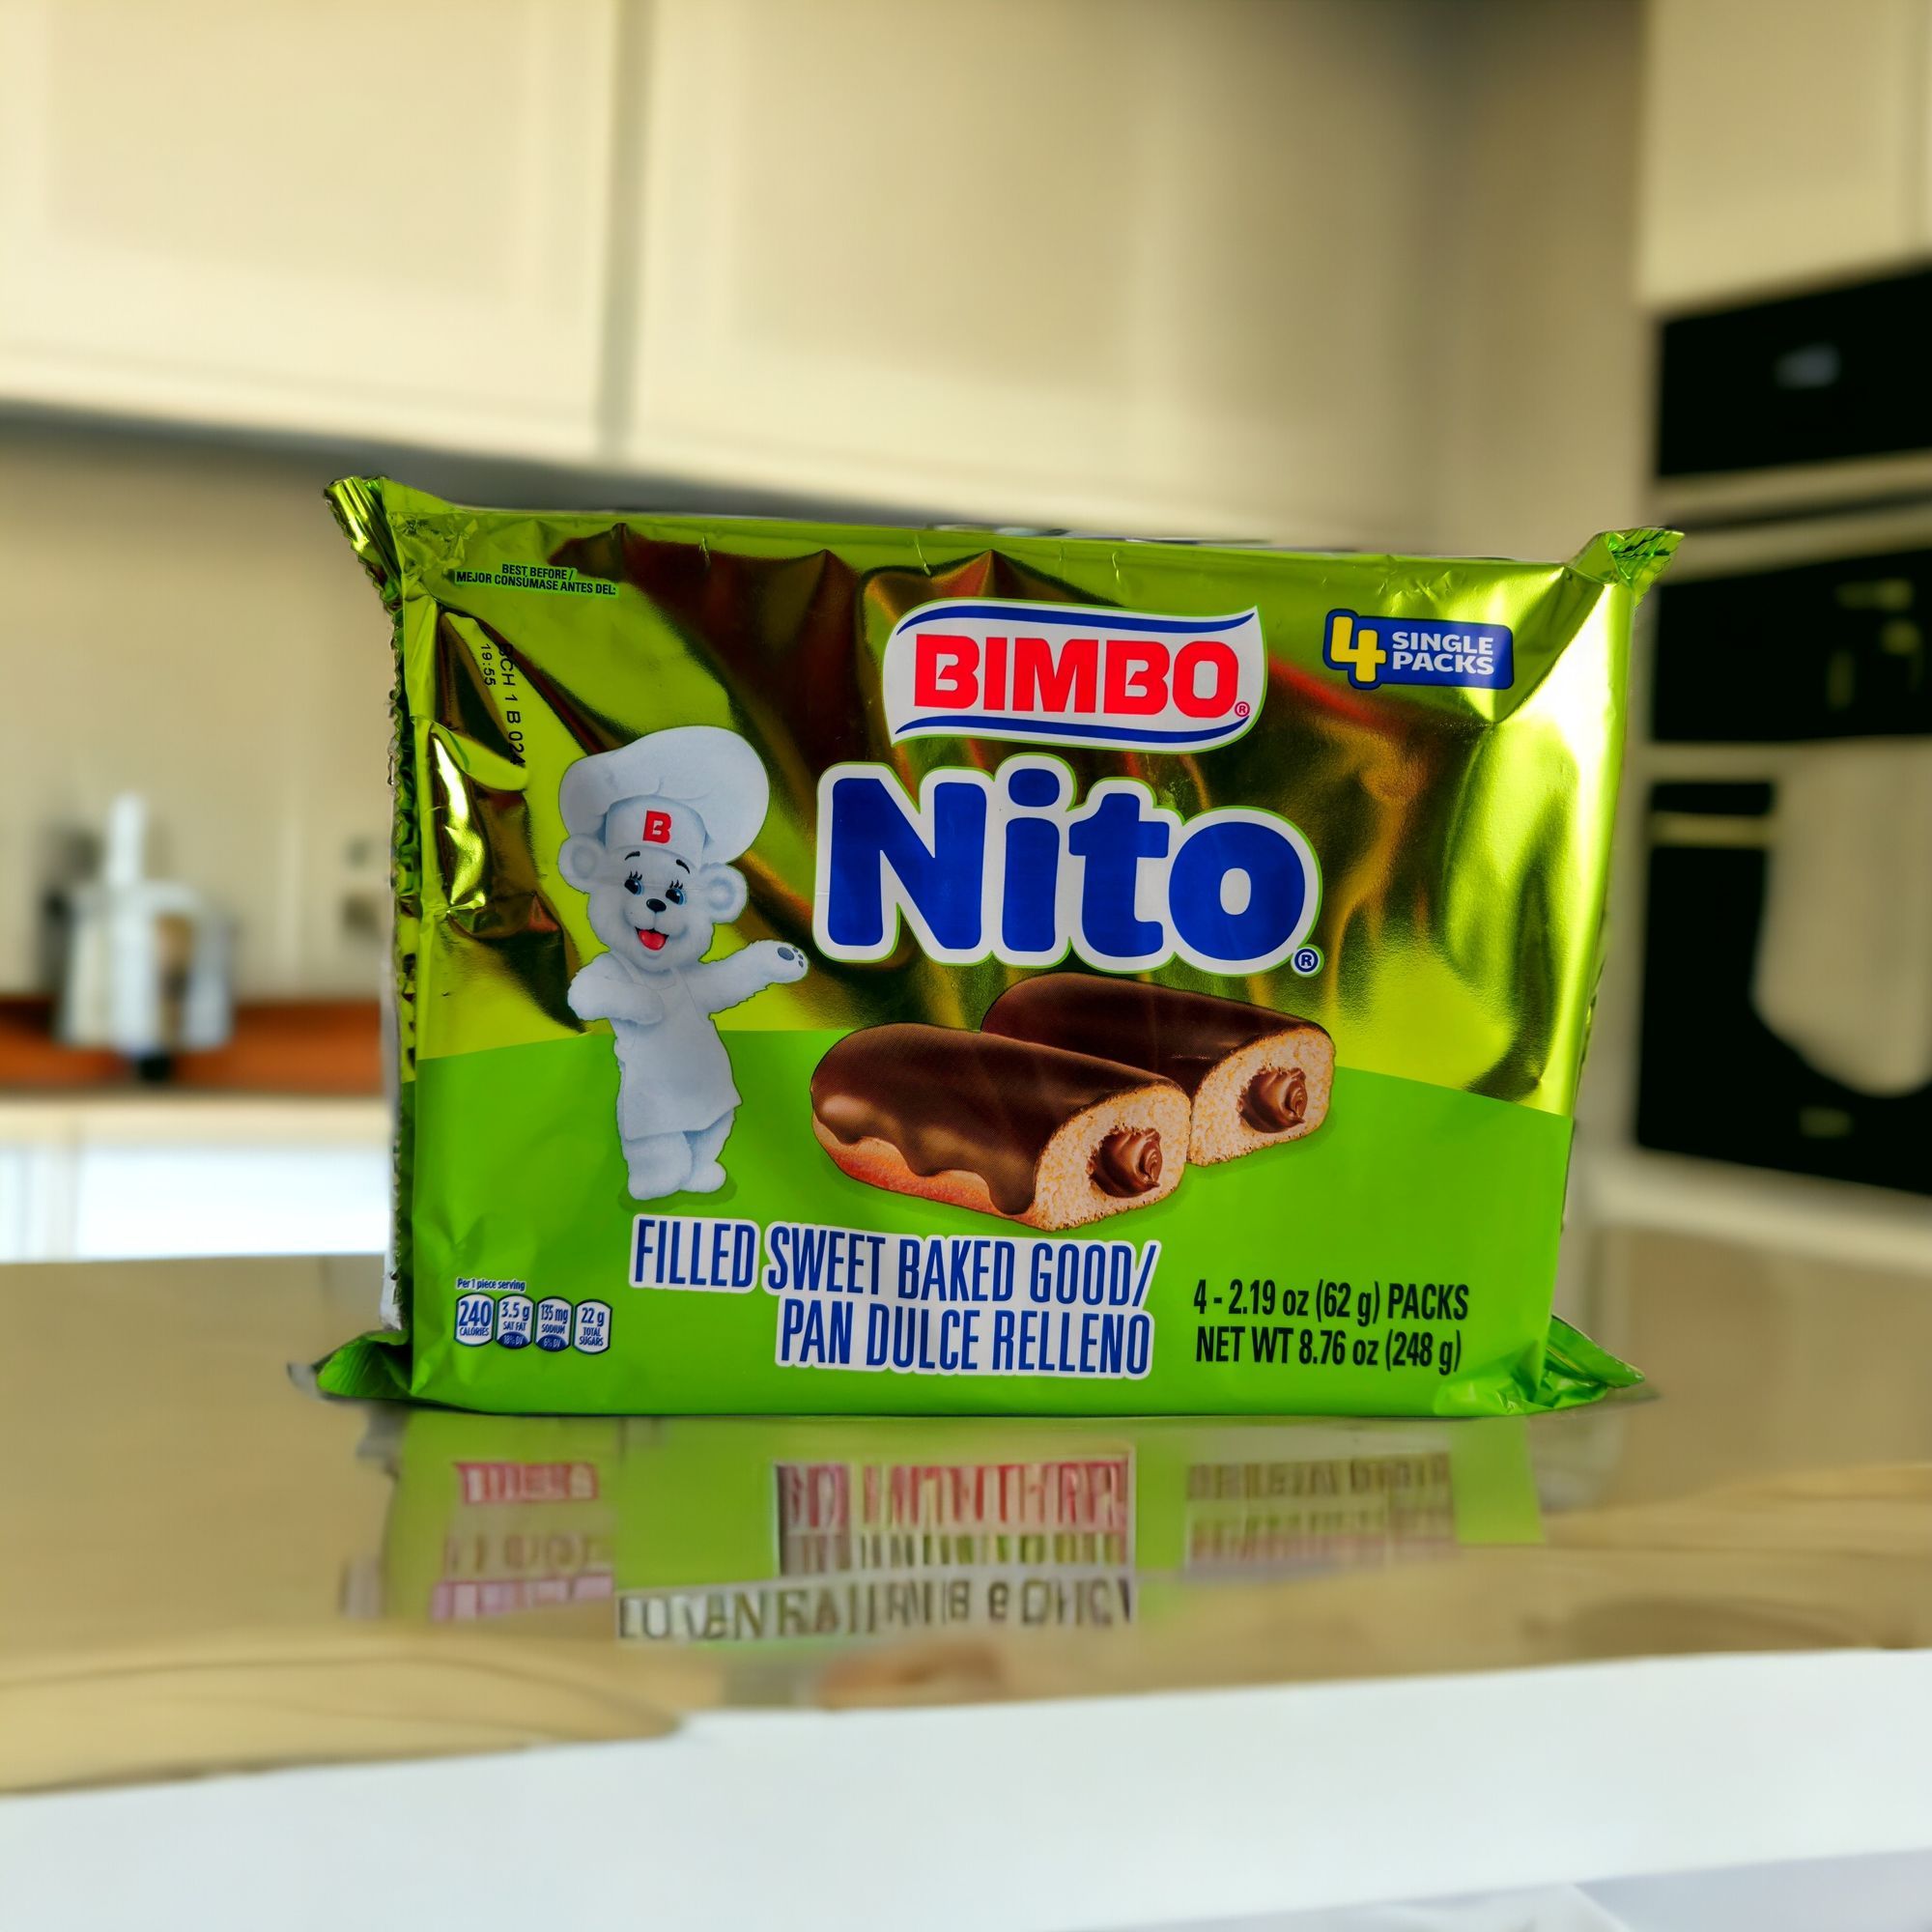 Nito - Bimbo - 4 packs (248 g)